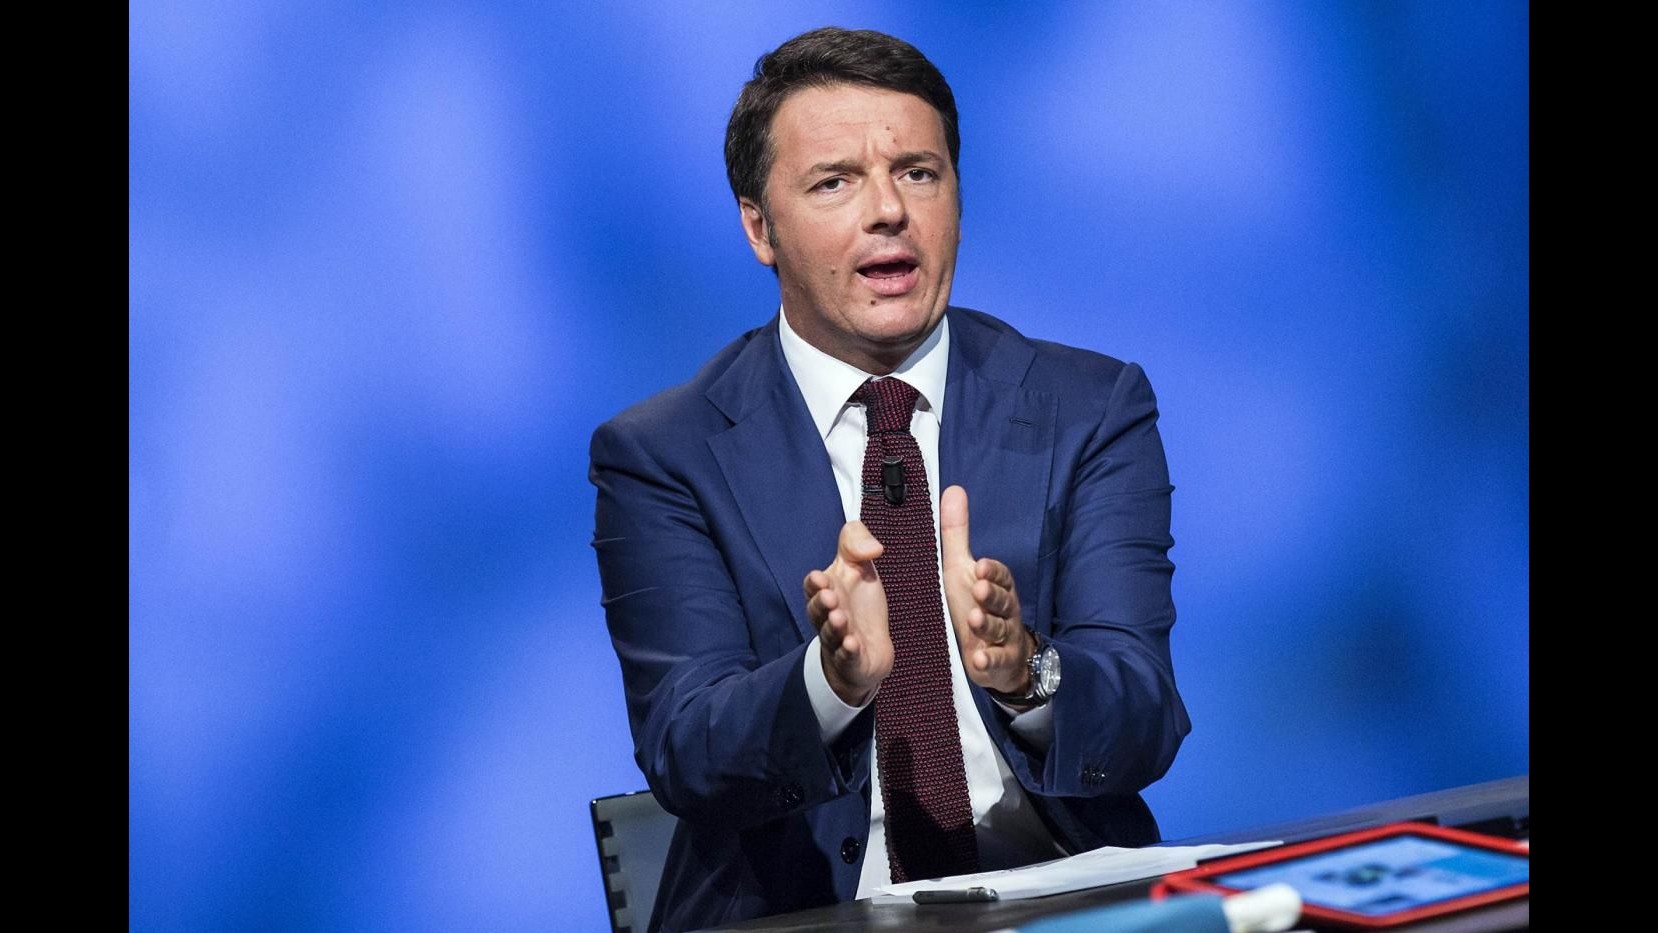 Banche, Renzi: Boschi non ha conflitto interessi, nessun favoritismo